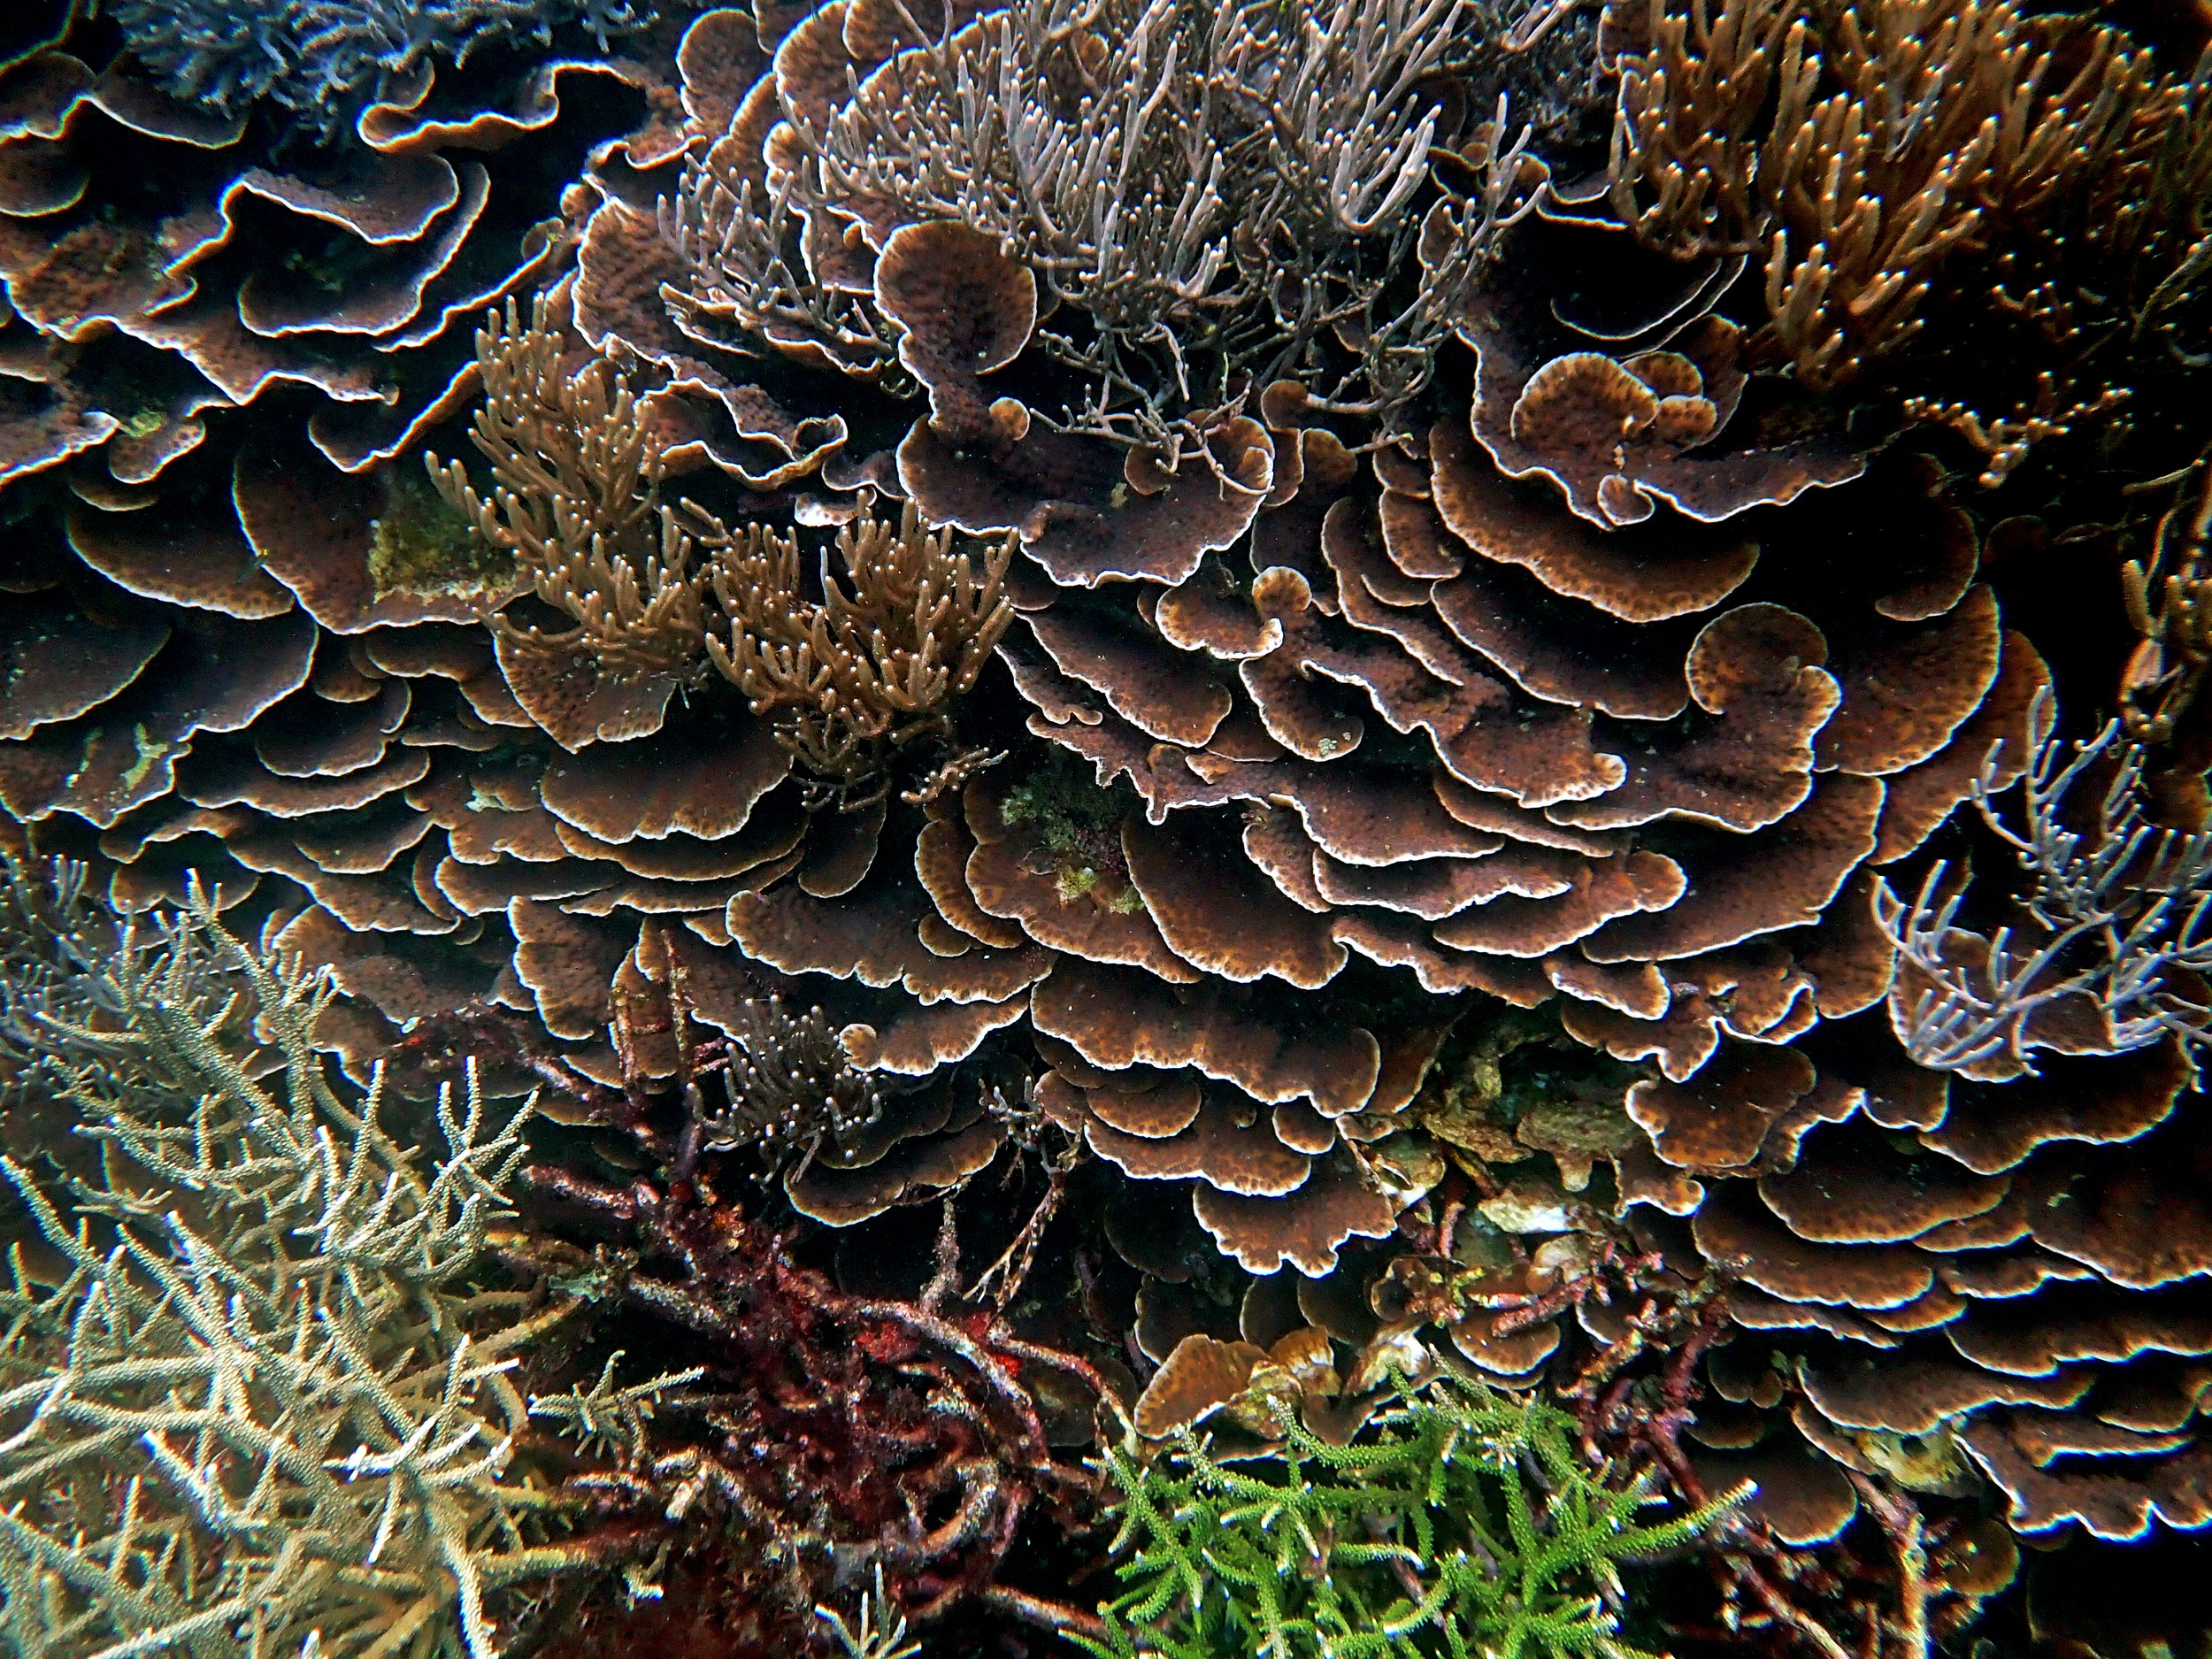 100% coral.jpg